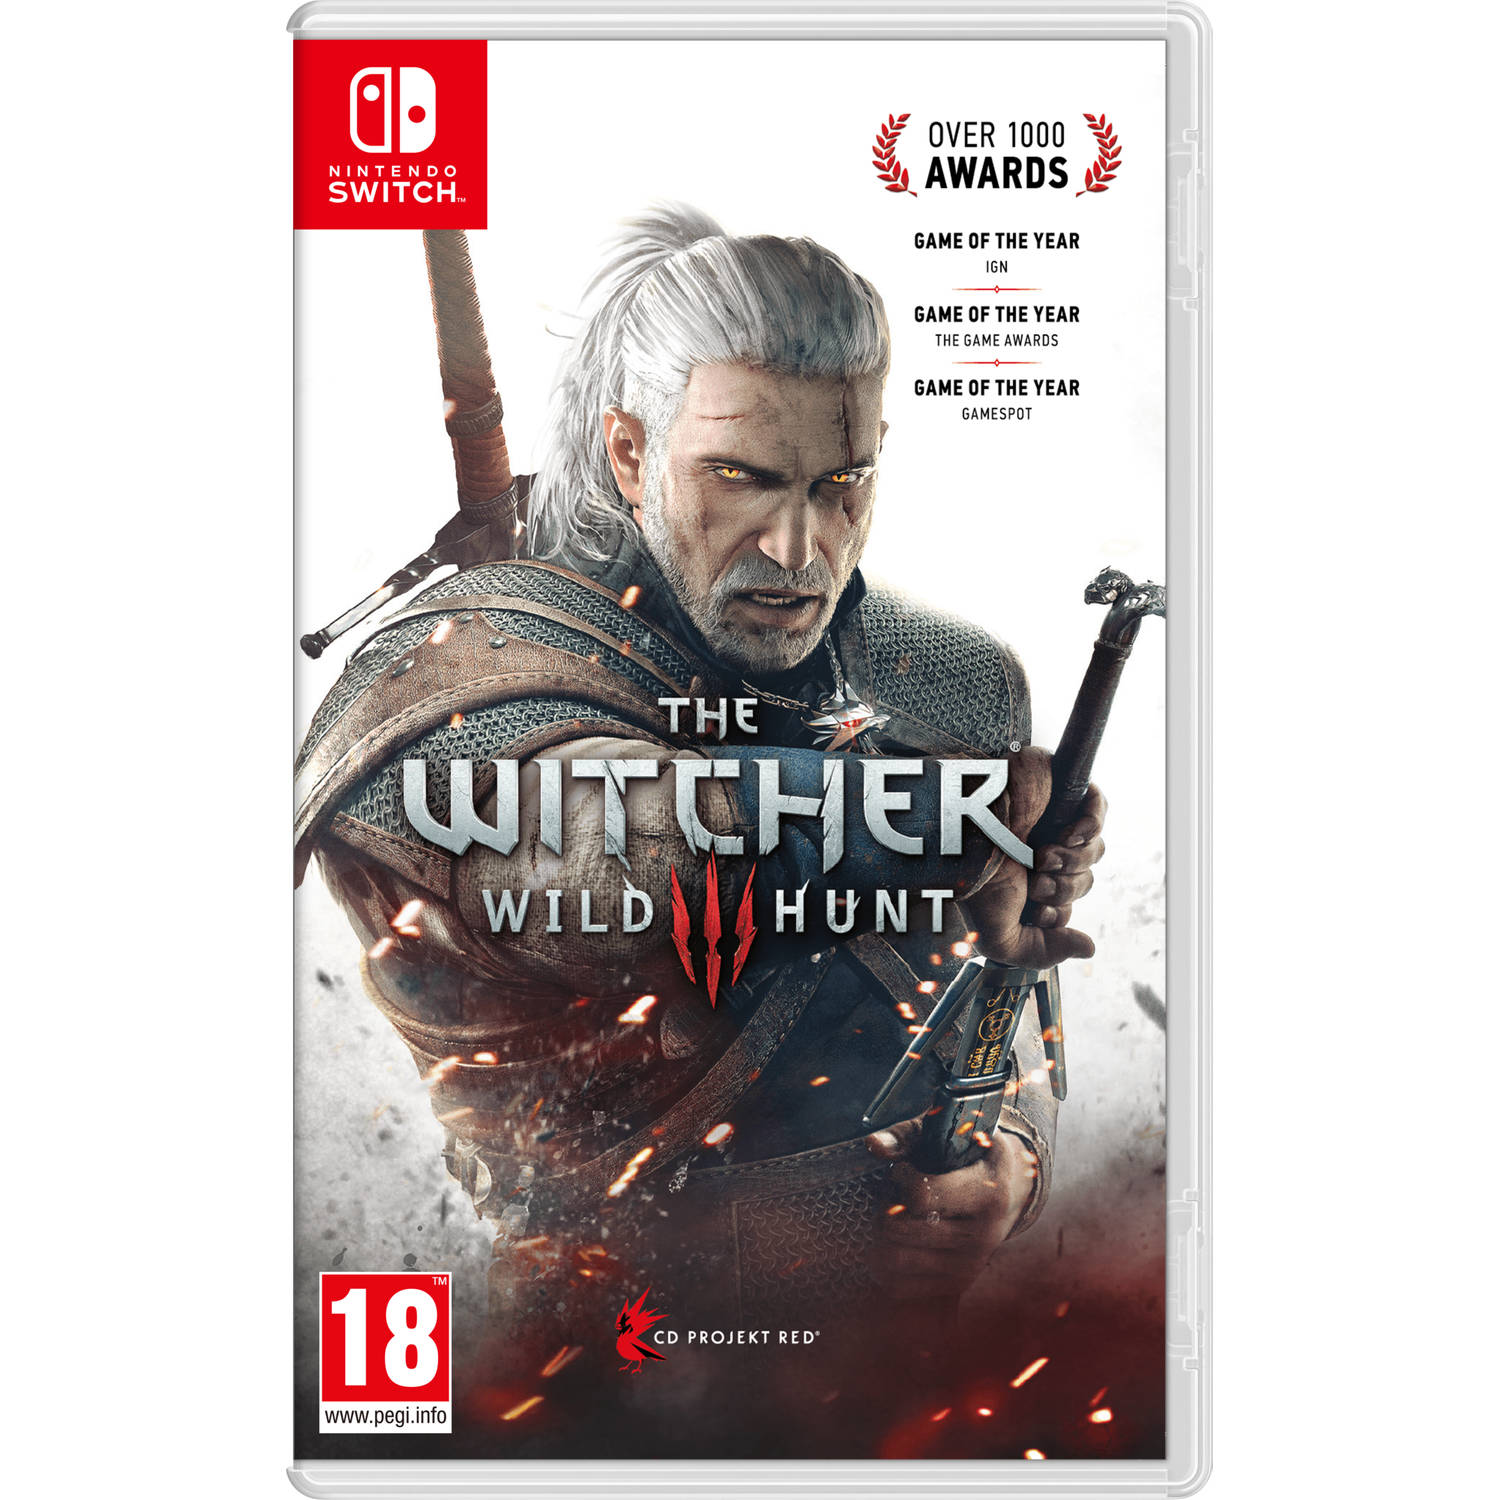 Witcher 3 Wild hunt (Vanilla Edition). (Nintendo Switch)